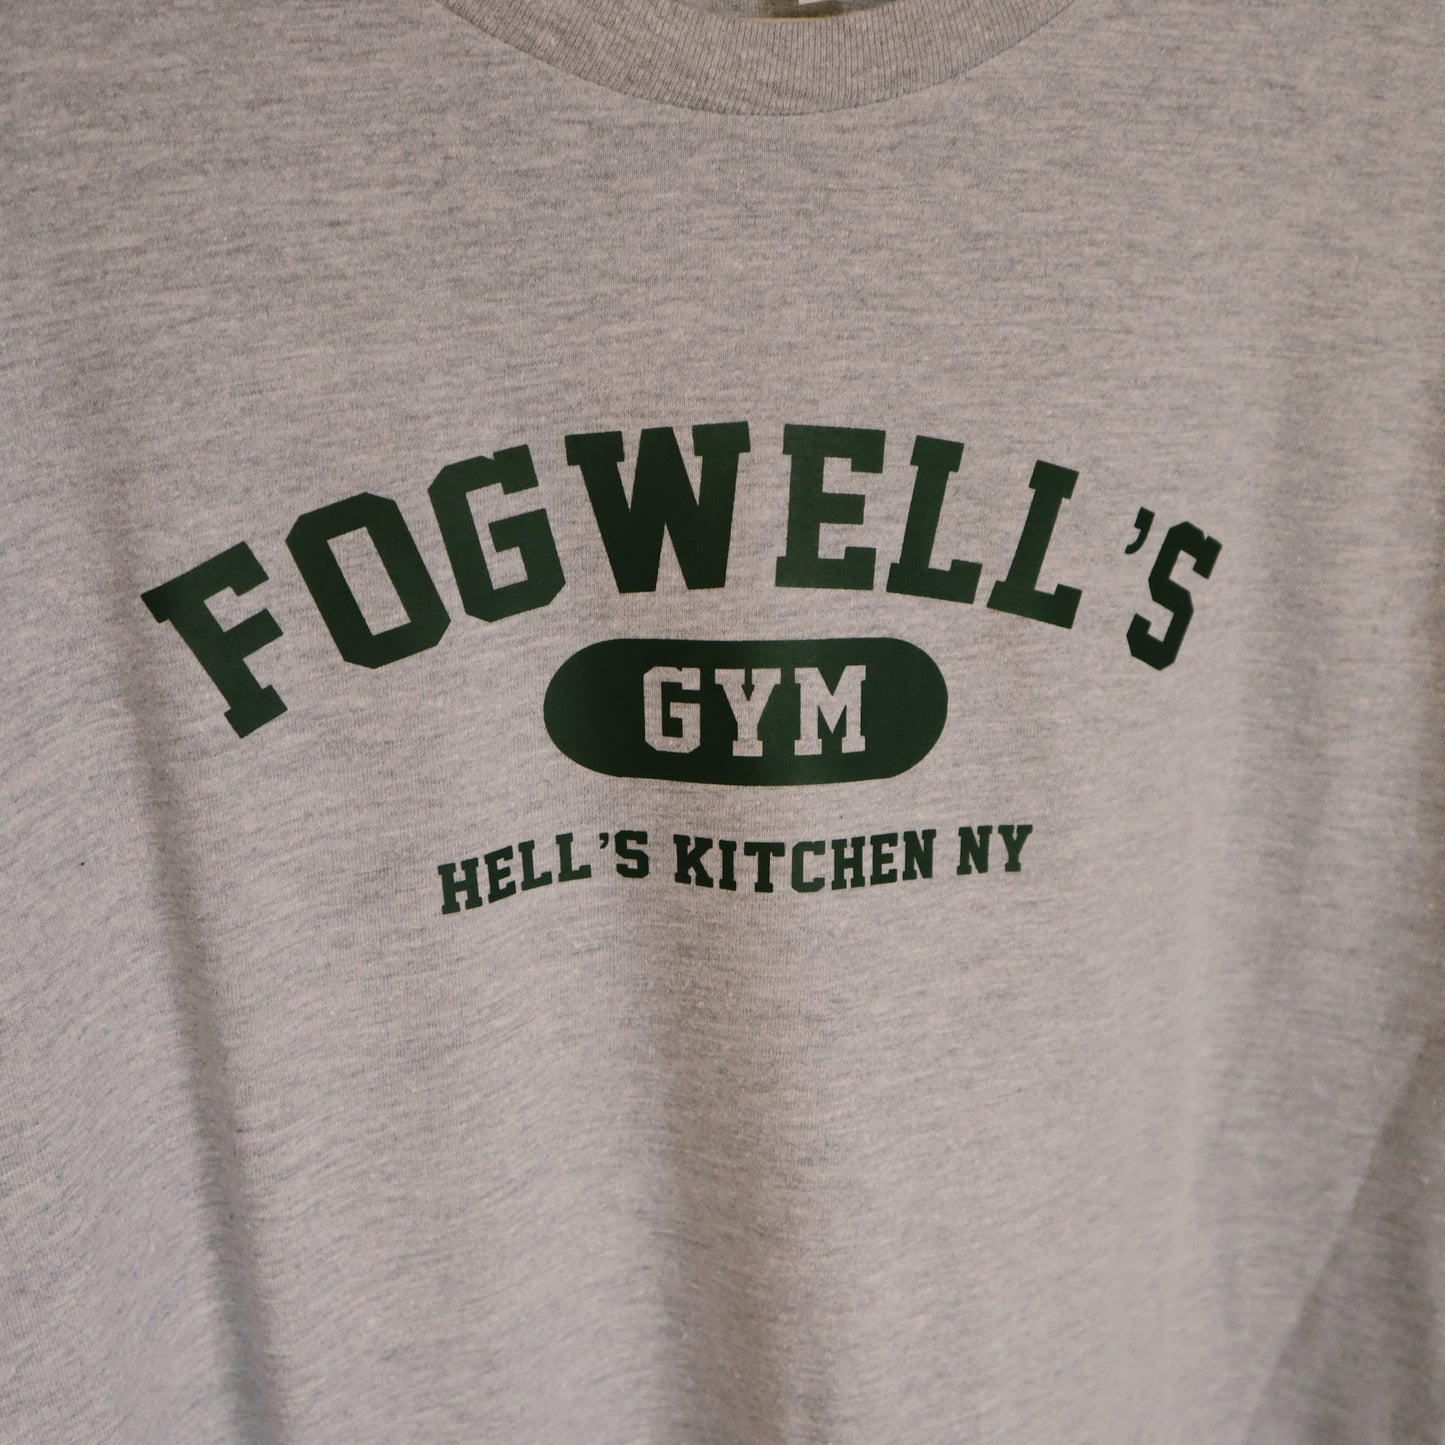 Fogwell’s Gym